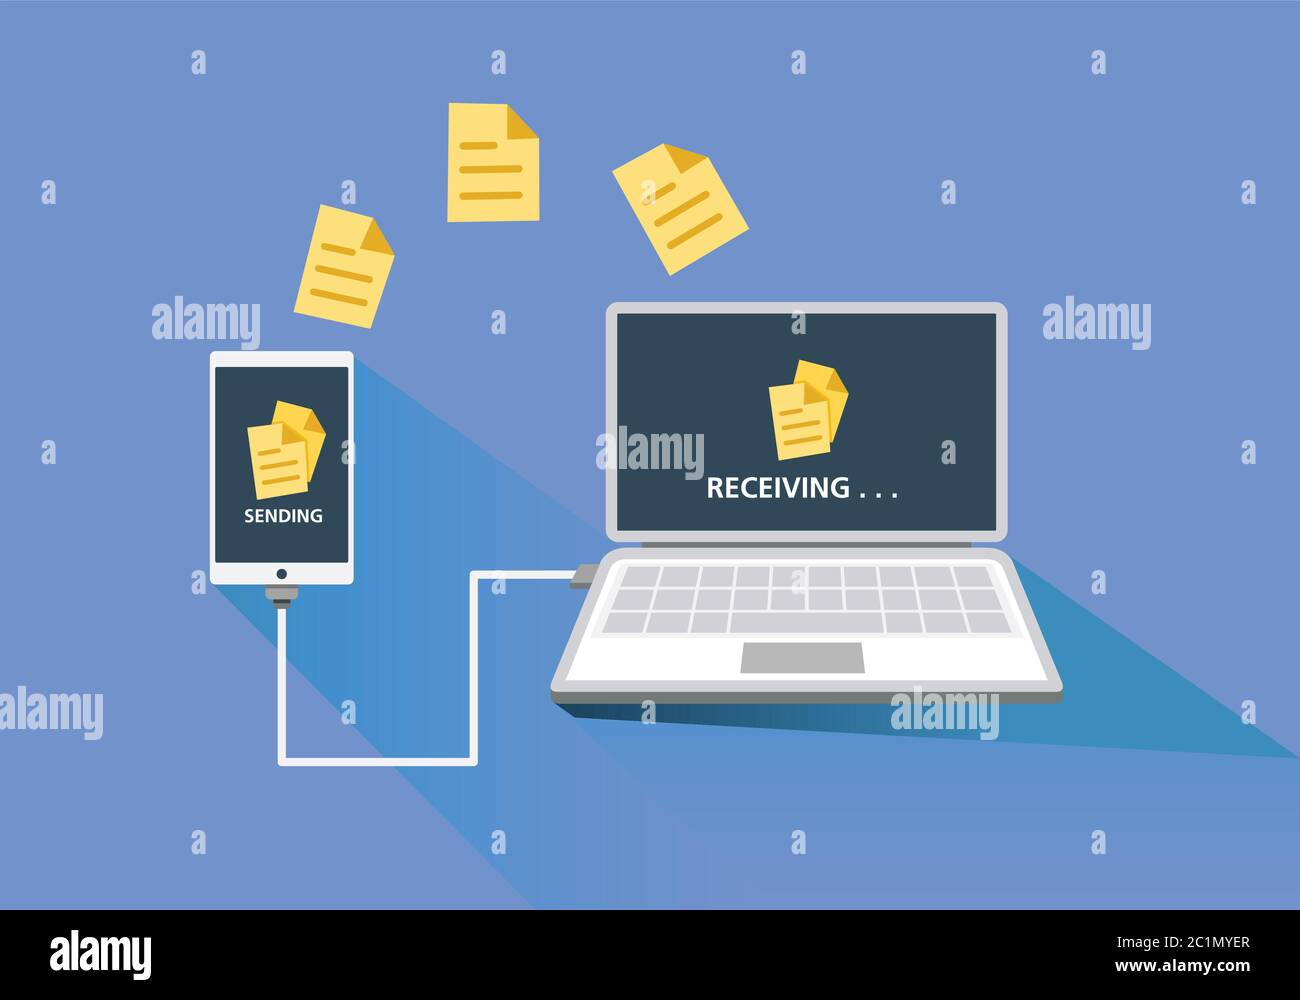 Immagine vettoriale piatta dell'invio di file da smartphone a dispositivi laptop per ufficio e per lavoro utilizzando cavi e fili. Illustrazione Vettoriale